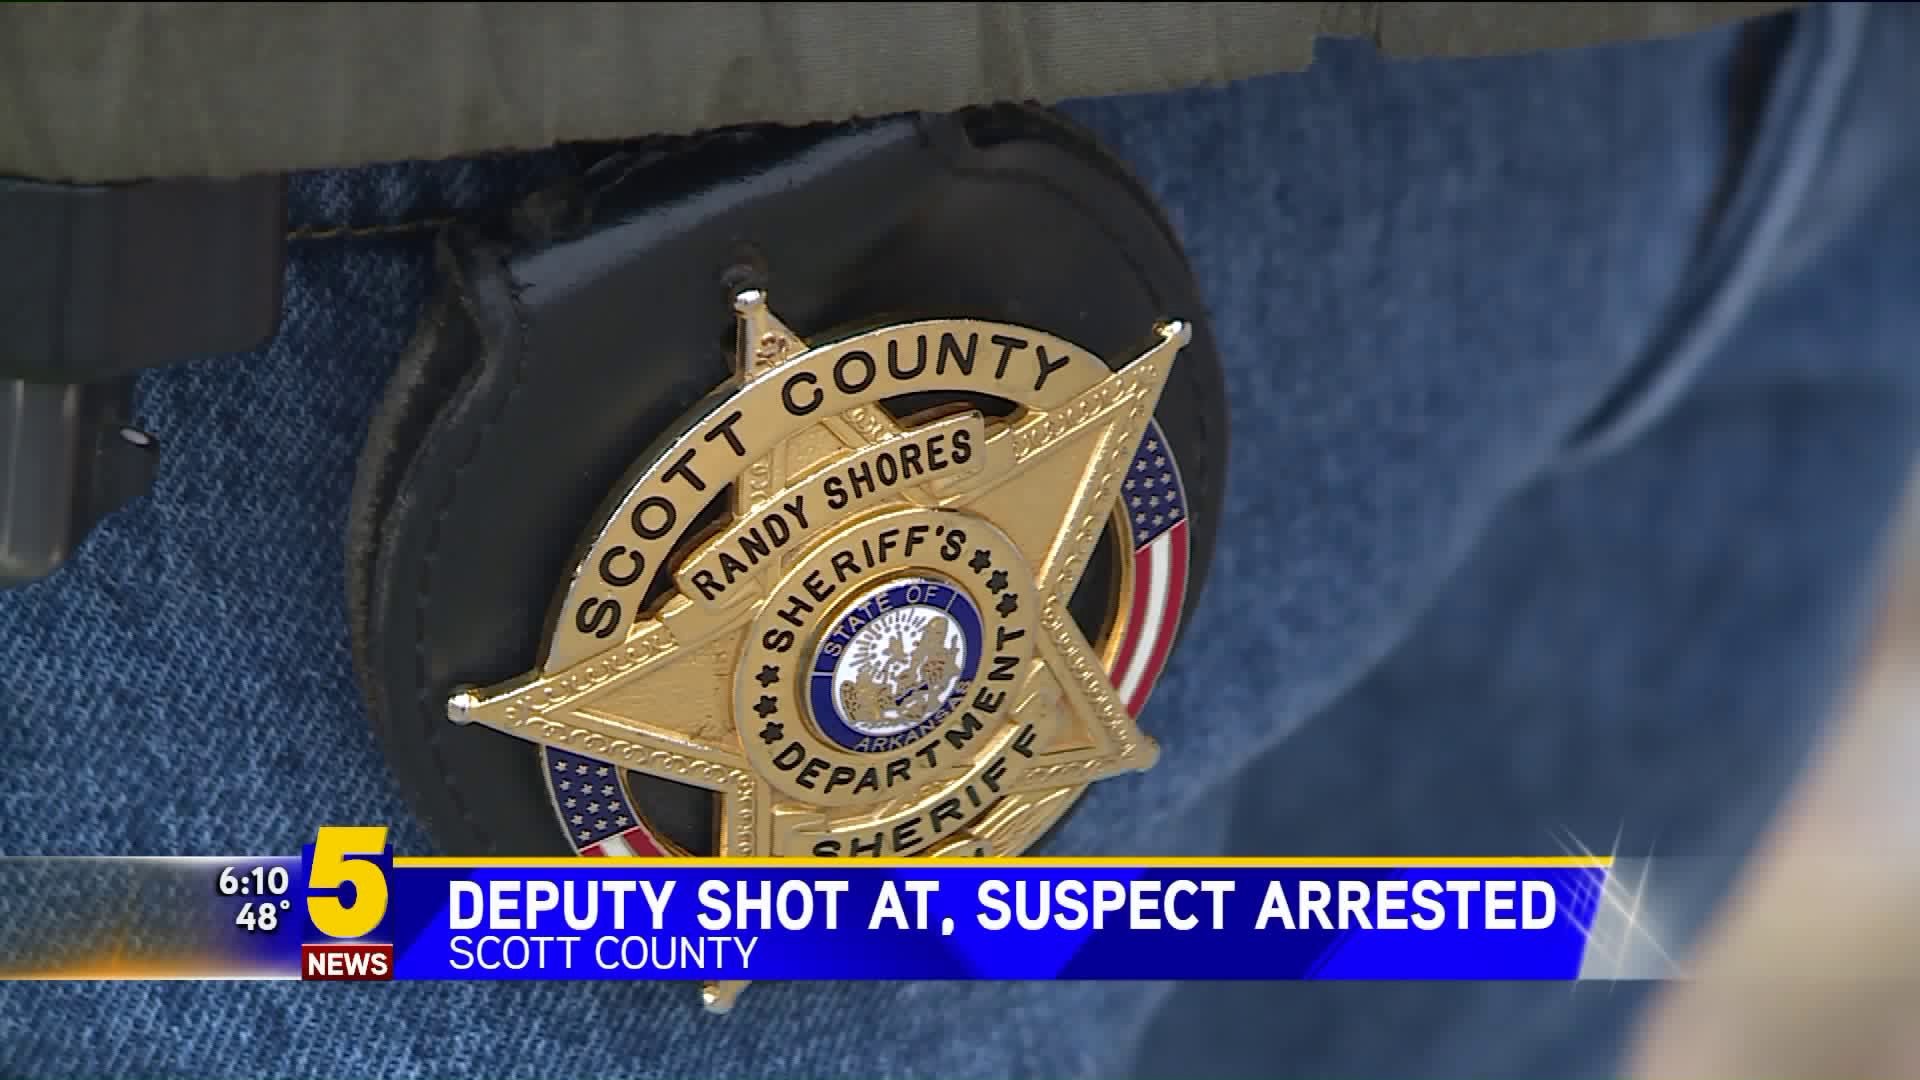 Deputy Shot At, Suspect Arrested